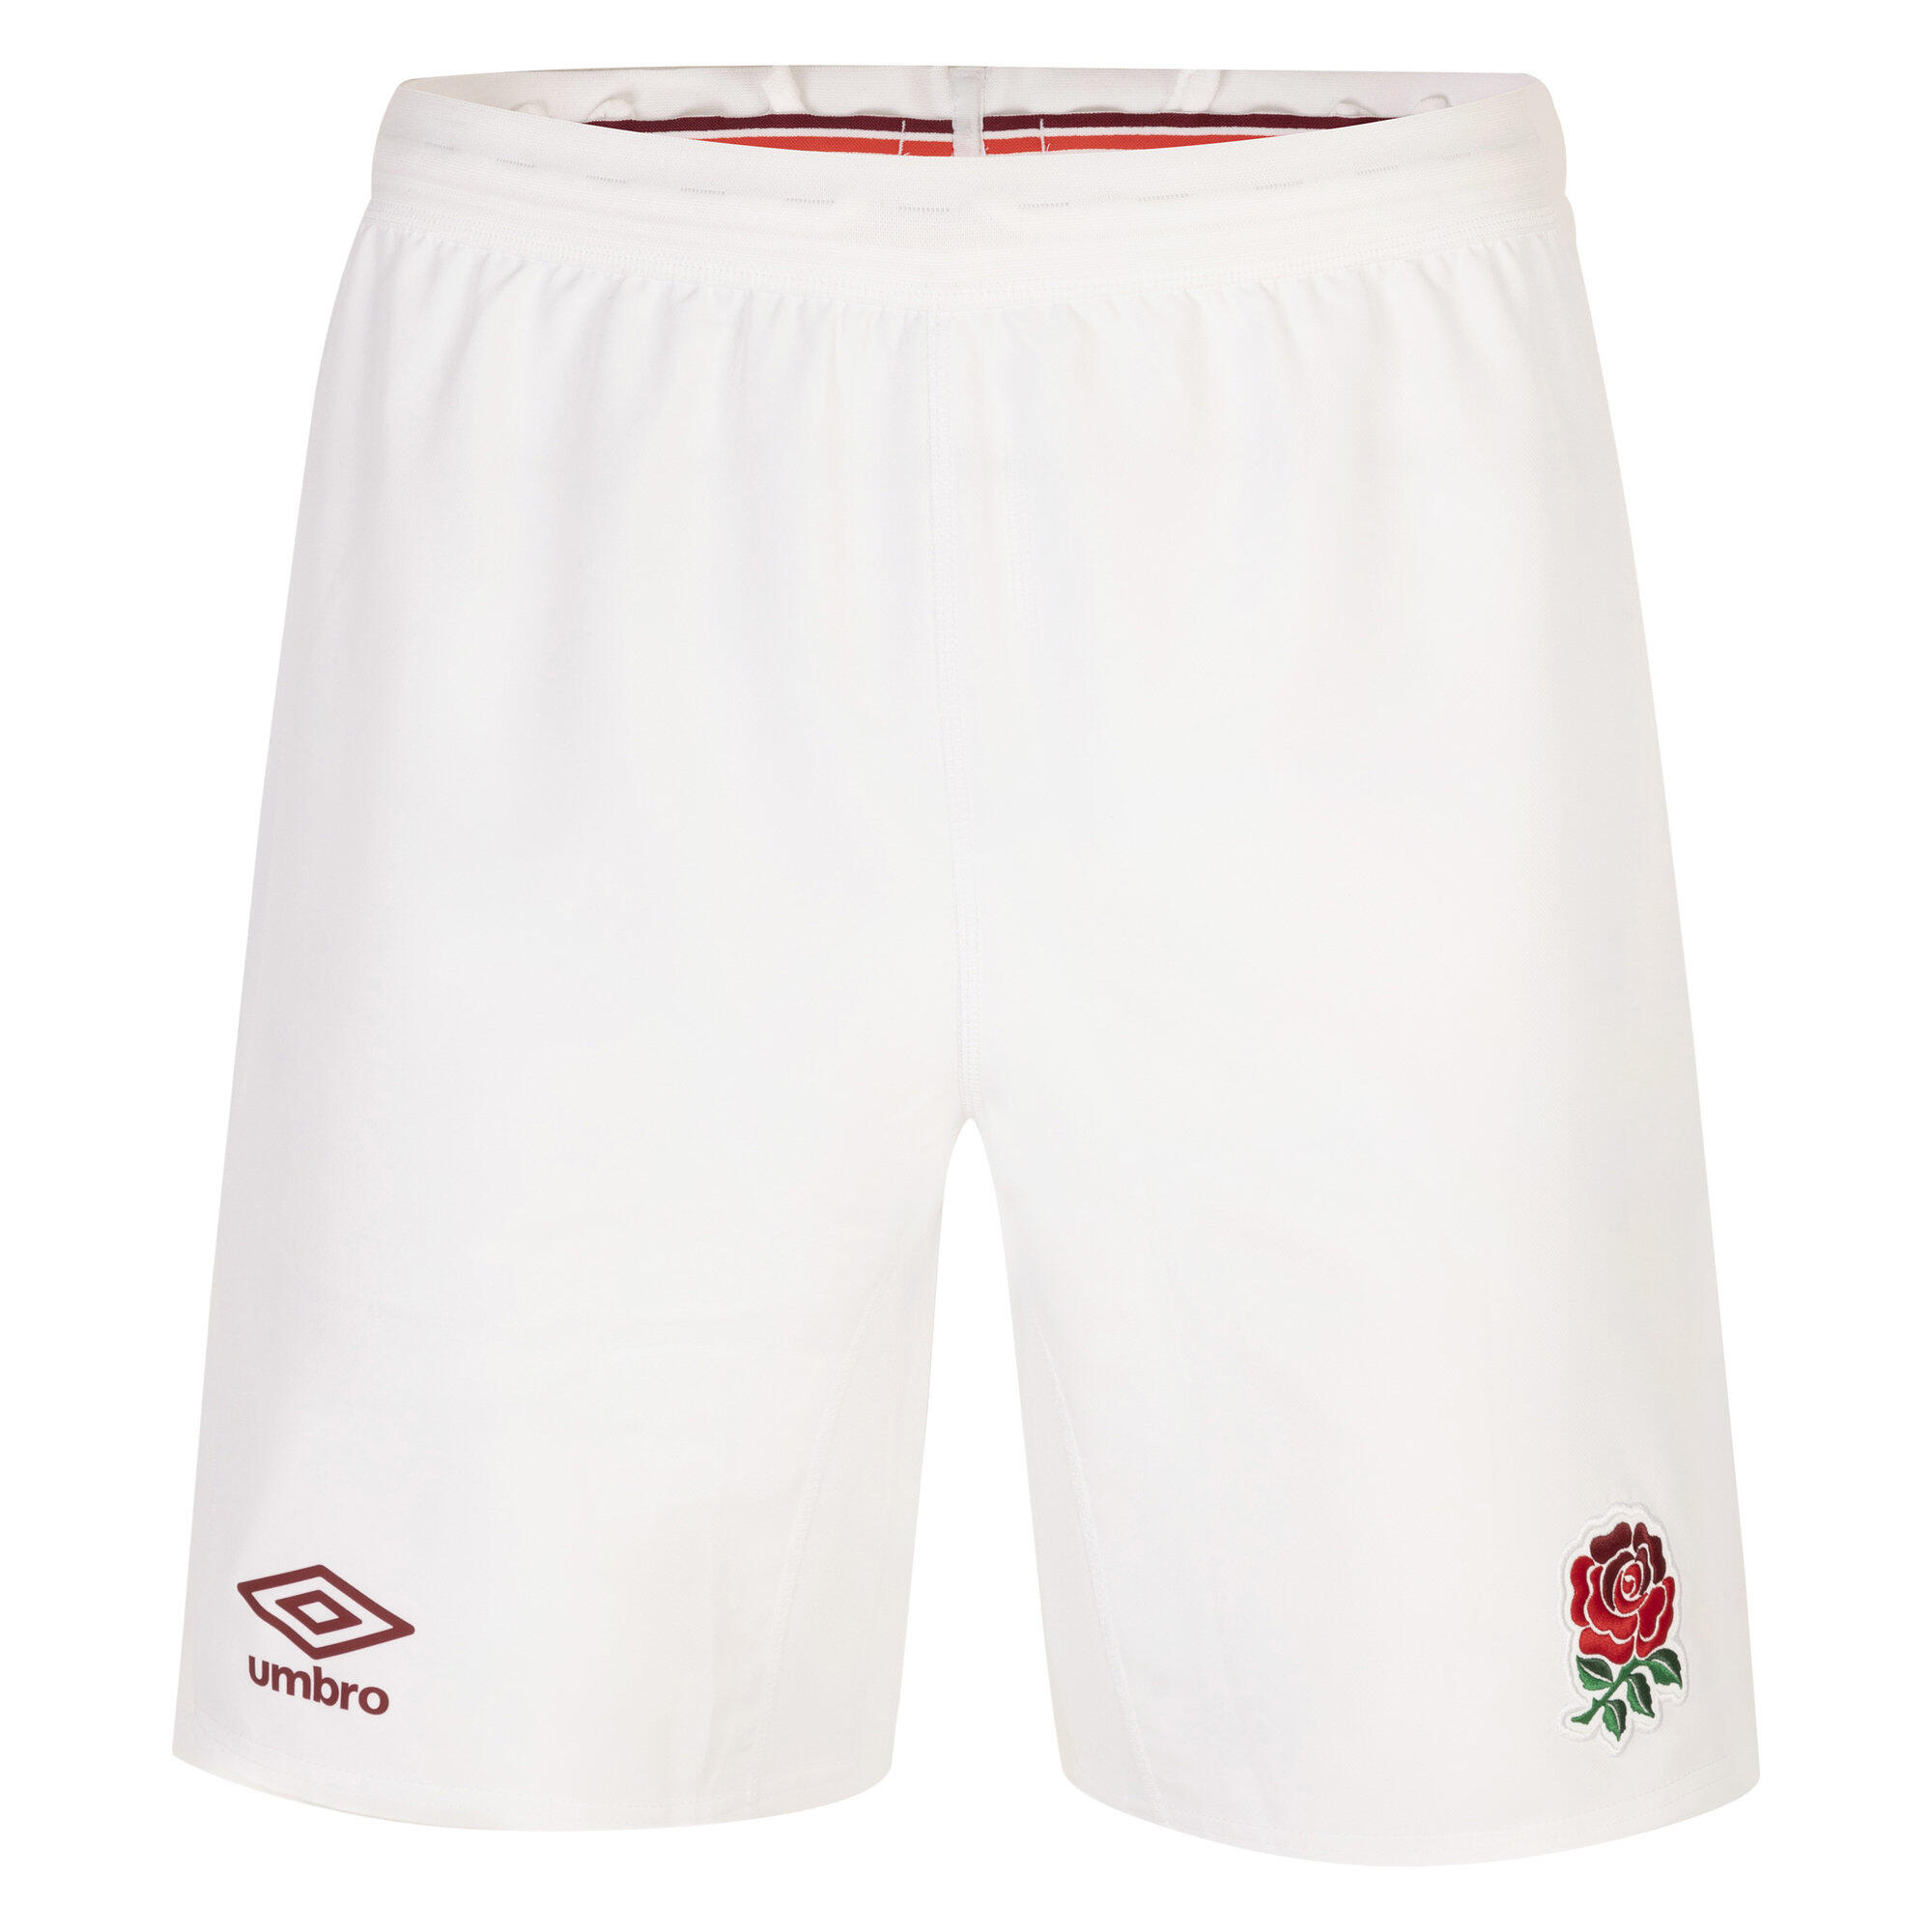 UMBRO Mens 23/24 England Rugby Replica Home Shorts (White)